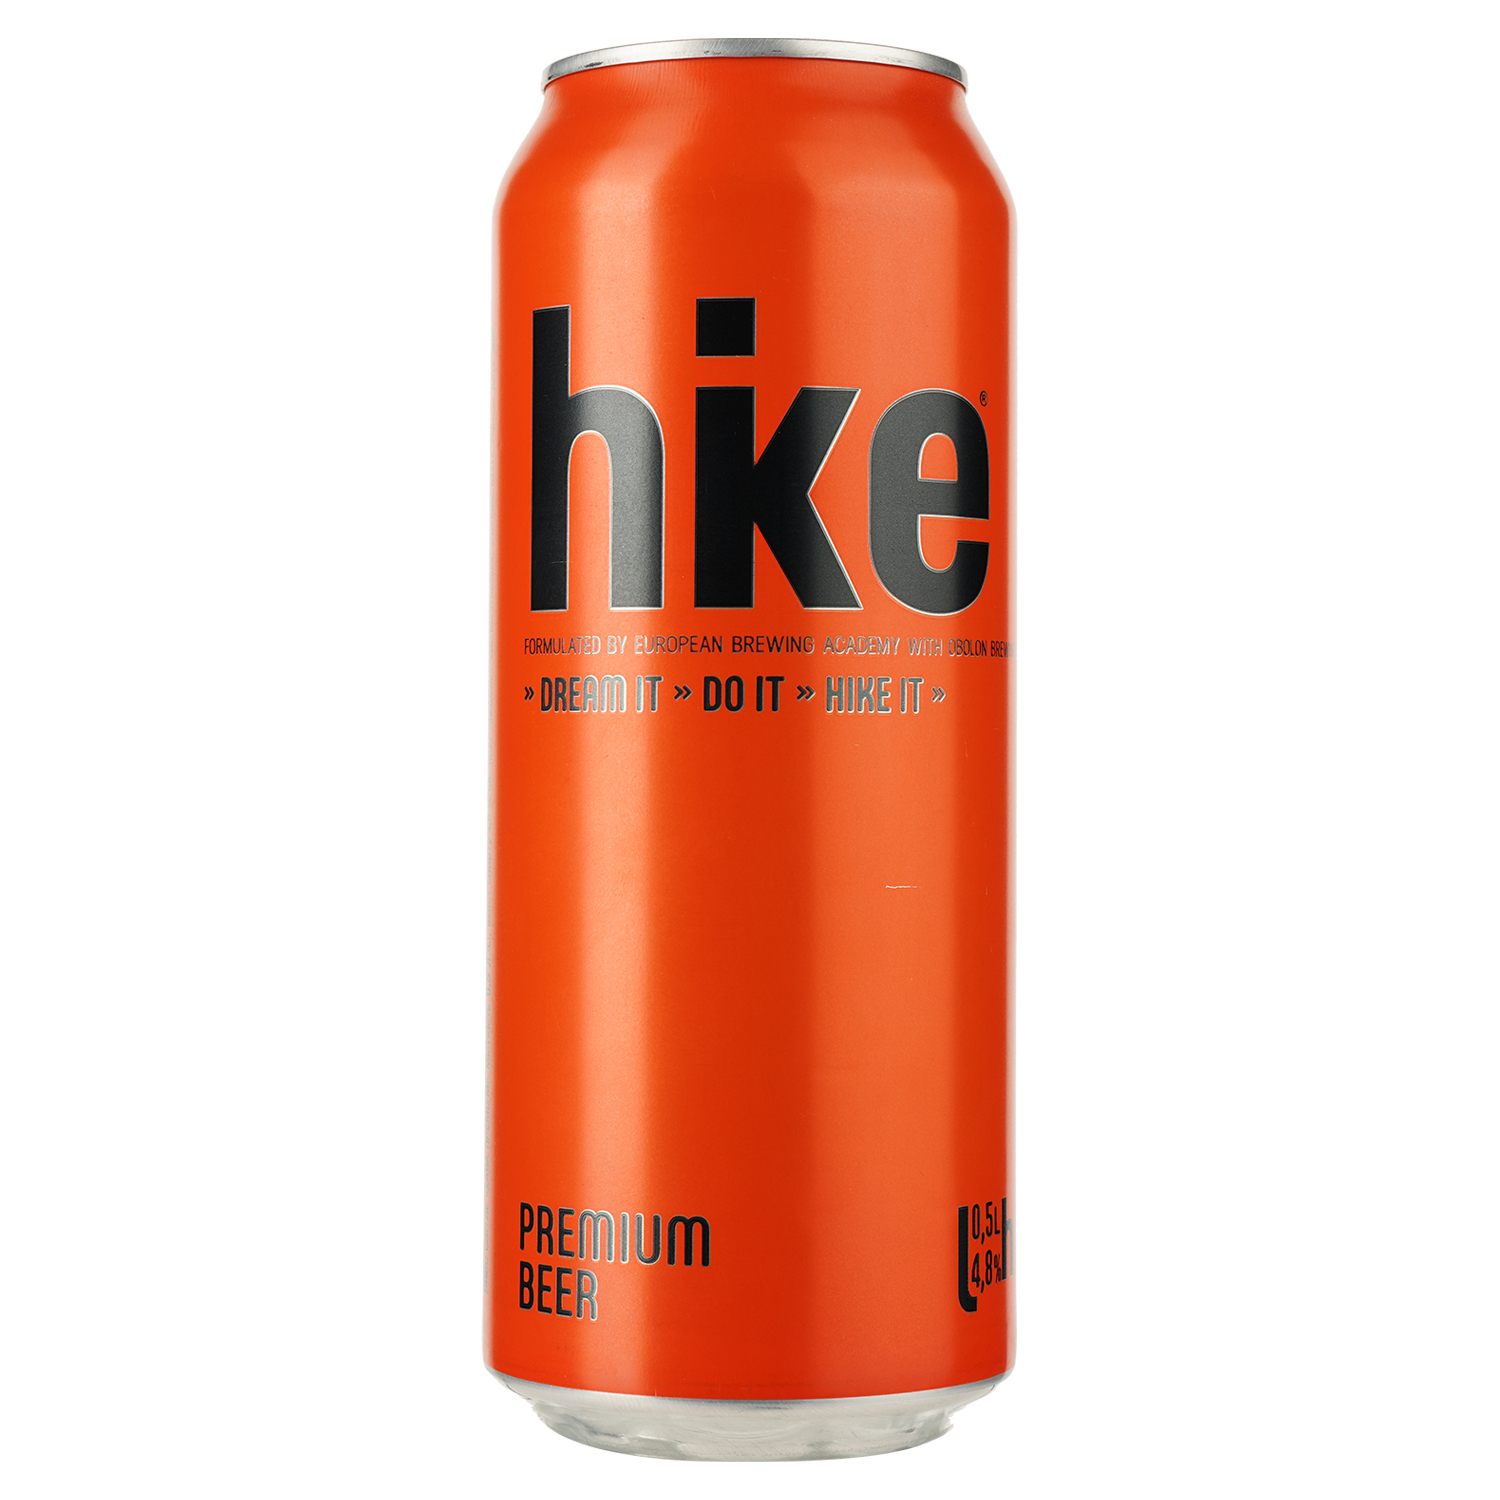 Пиво Hike Premium, світле, 4,8%, з/б, 0,5 л (196380) - фото 1